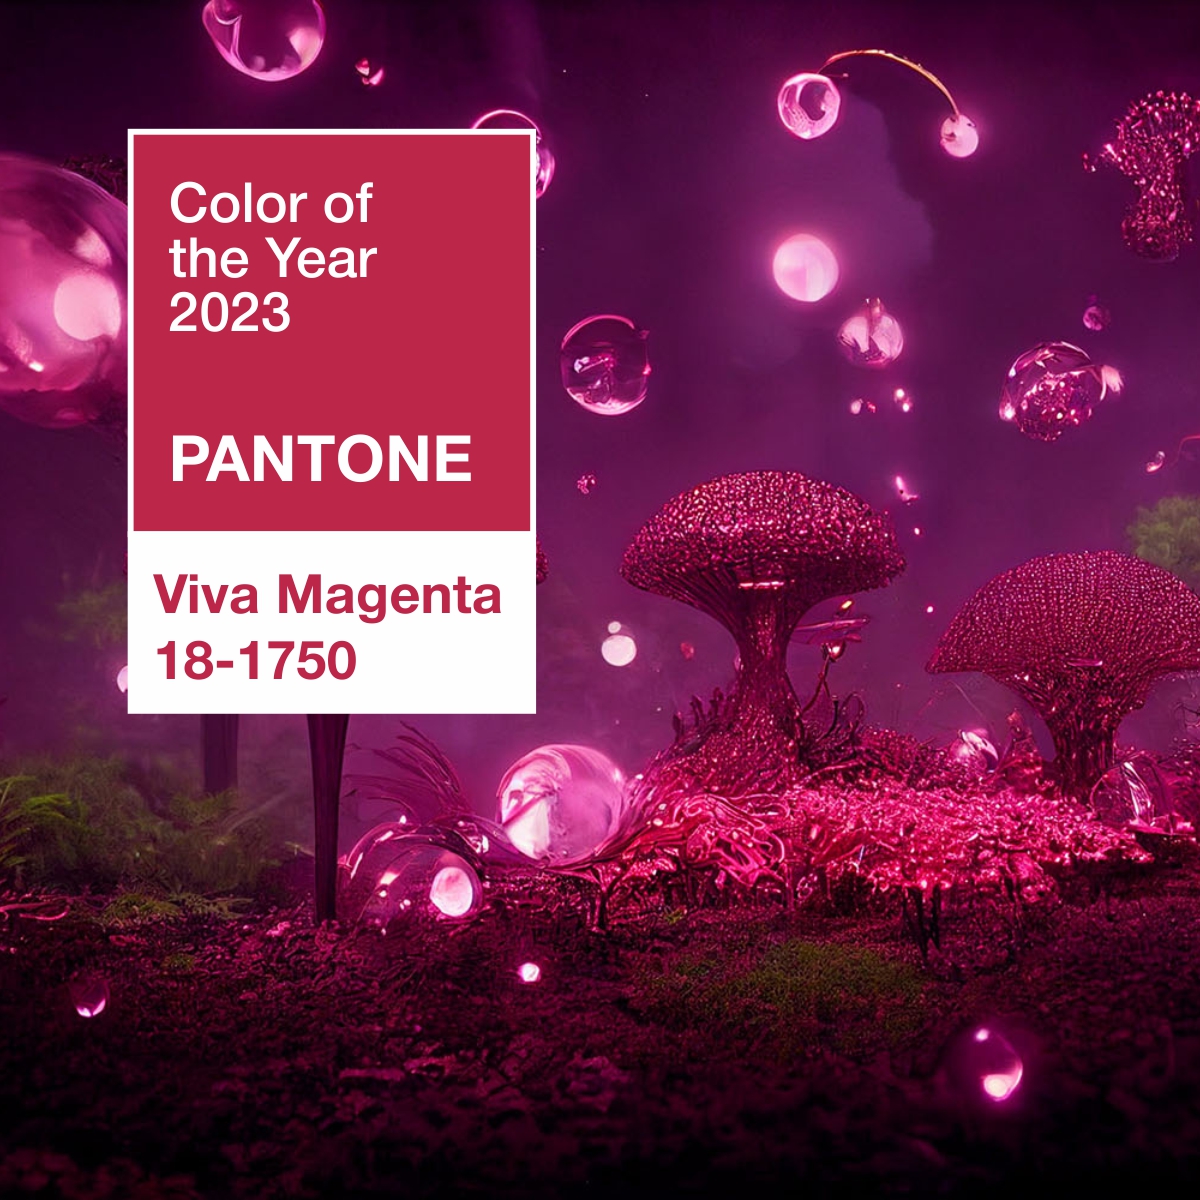 Цвет 2023 года по версии Pantone в интерьере